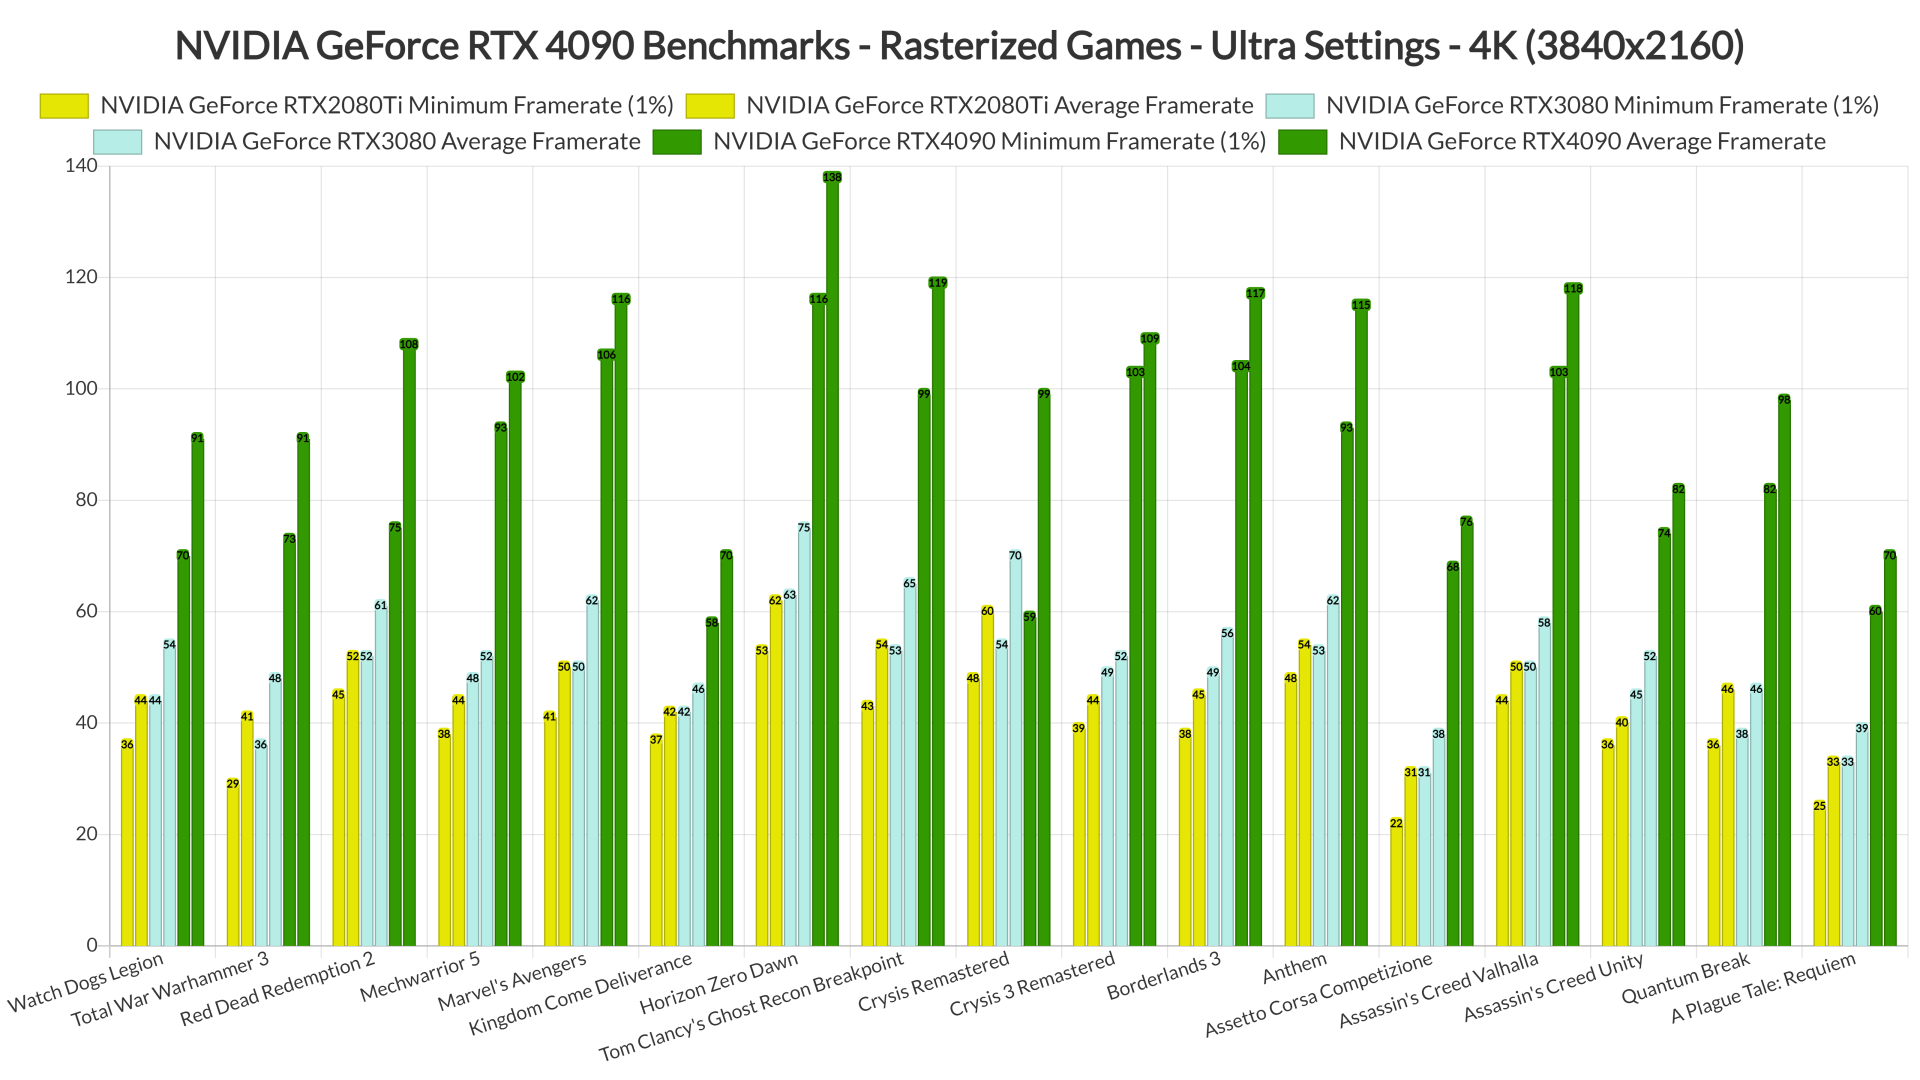 NVIDIA RTX 4090 rasterized benchmarks 4K